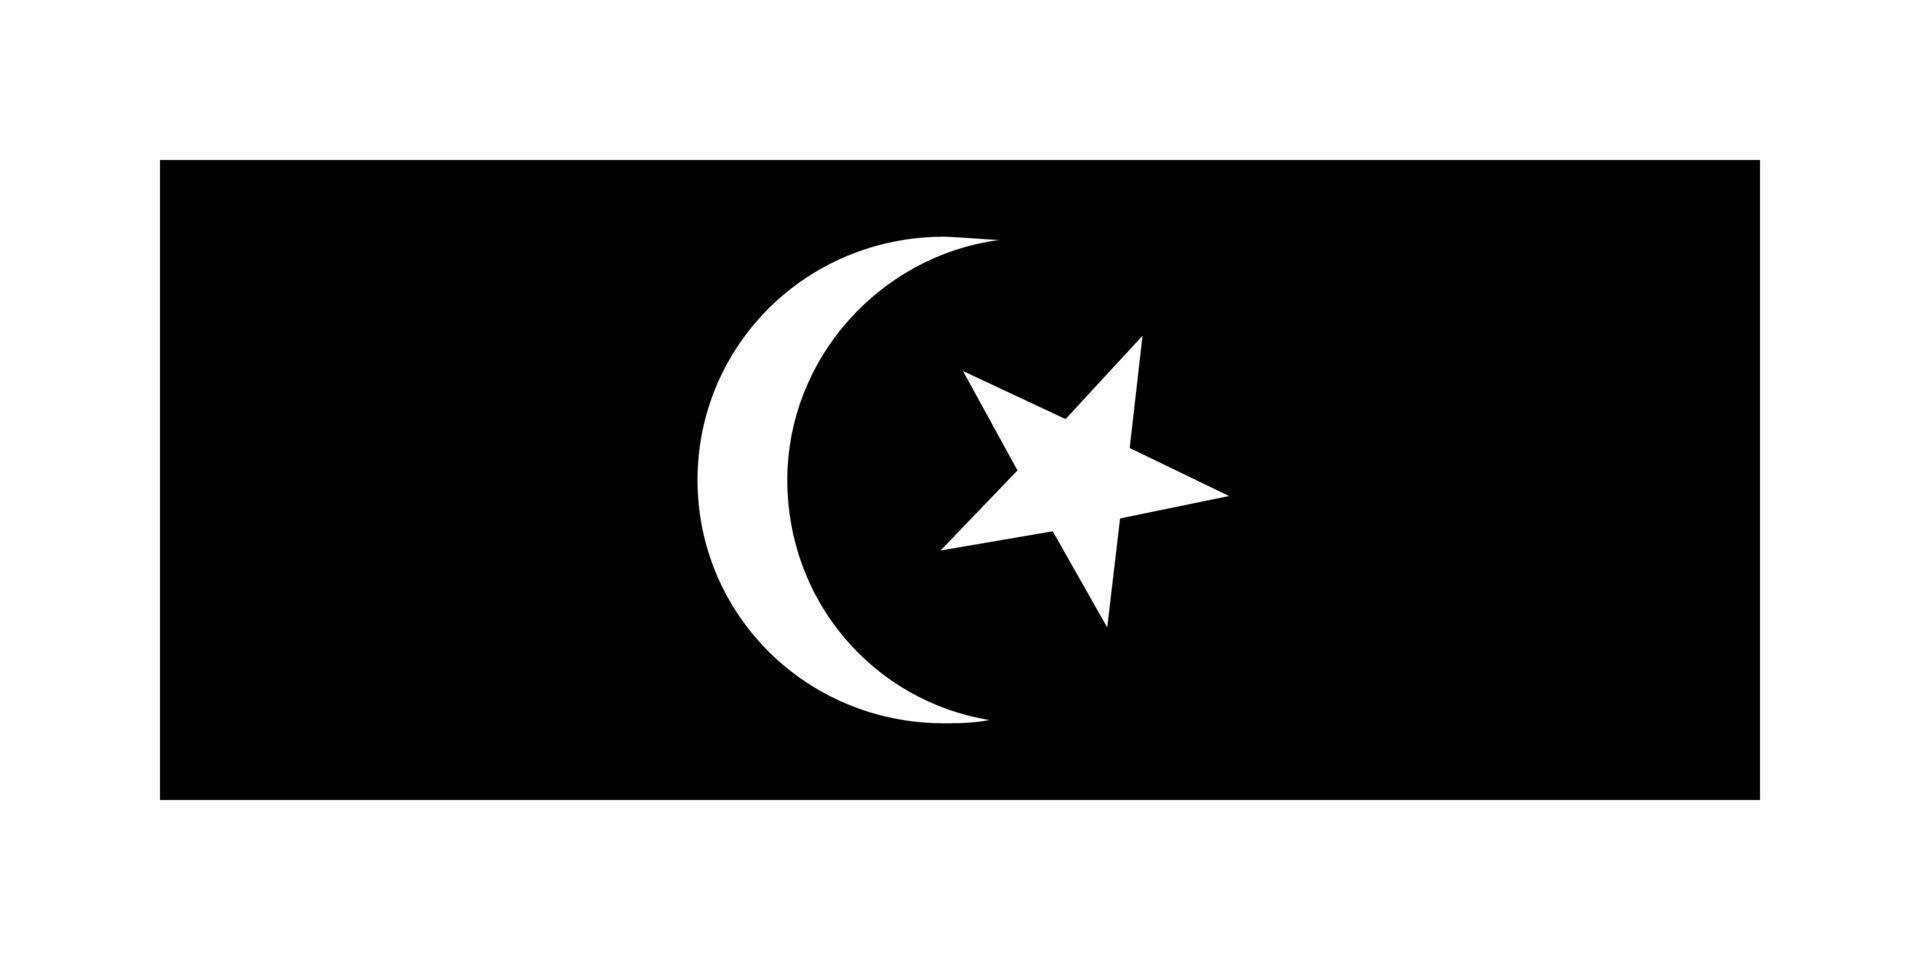 simples bandeira Estado do Malásia. vetor